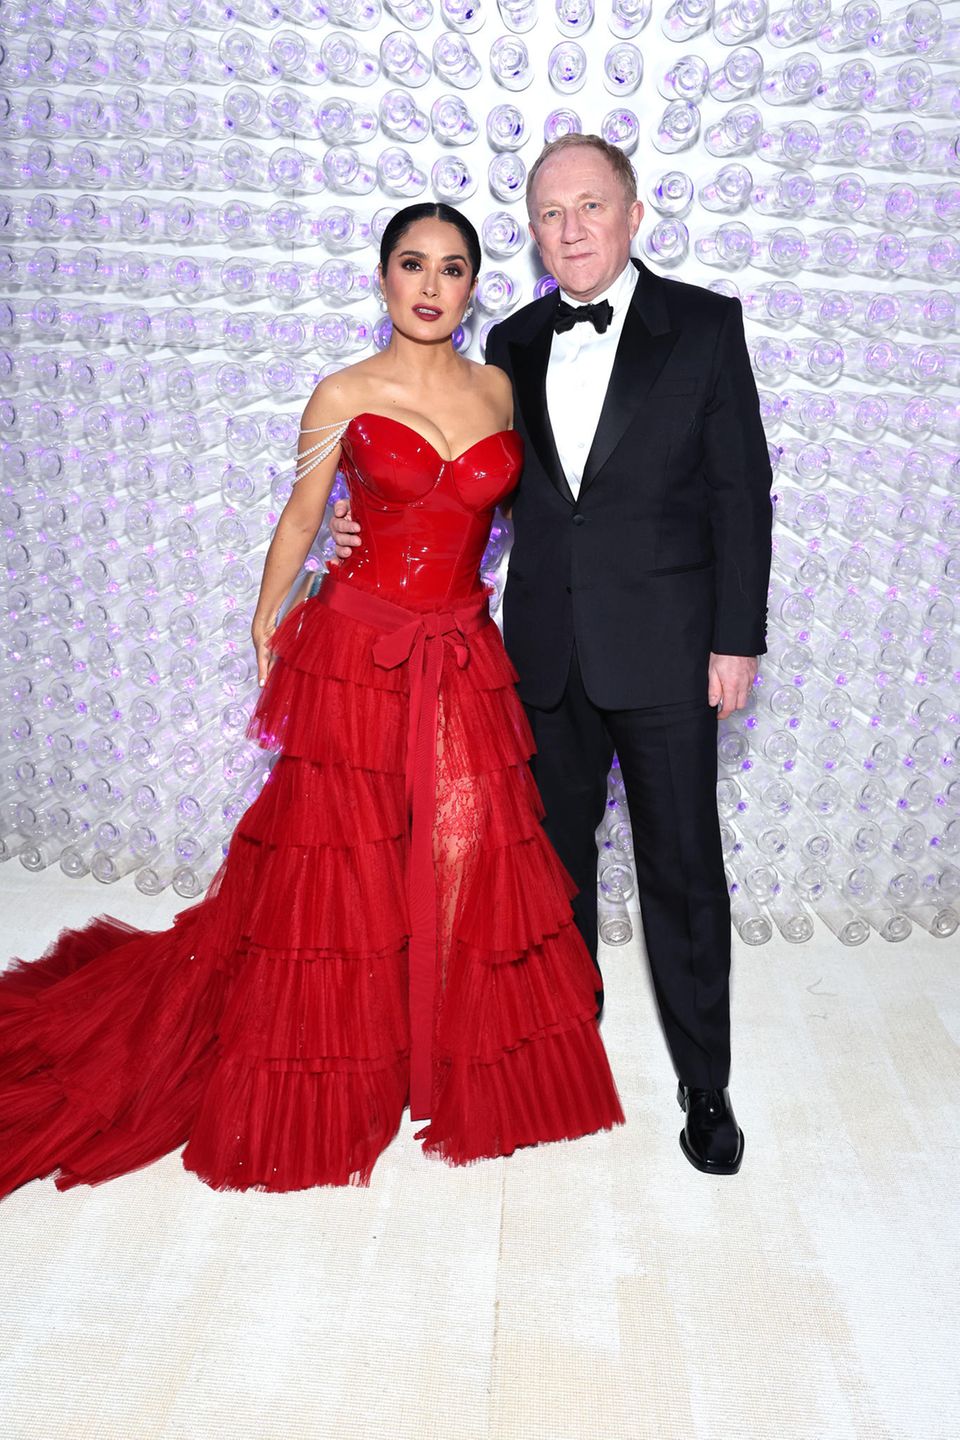 Bras dessus bras dessous, Salma Hayek et son mari François-Henri Pinault assistent au Met Gala.  Selma porte une robe rouge avec corsage en dentelle et vinyle de Gucci.  François apparaît dans un costume très classique.